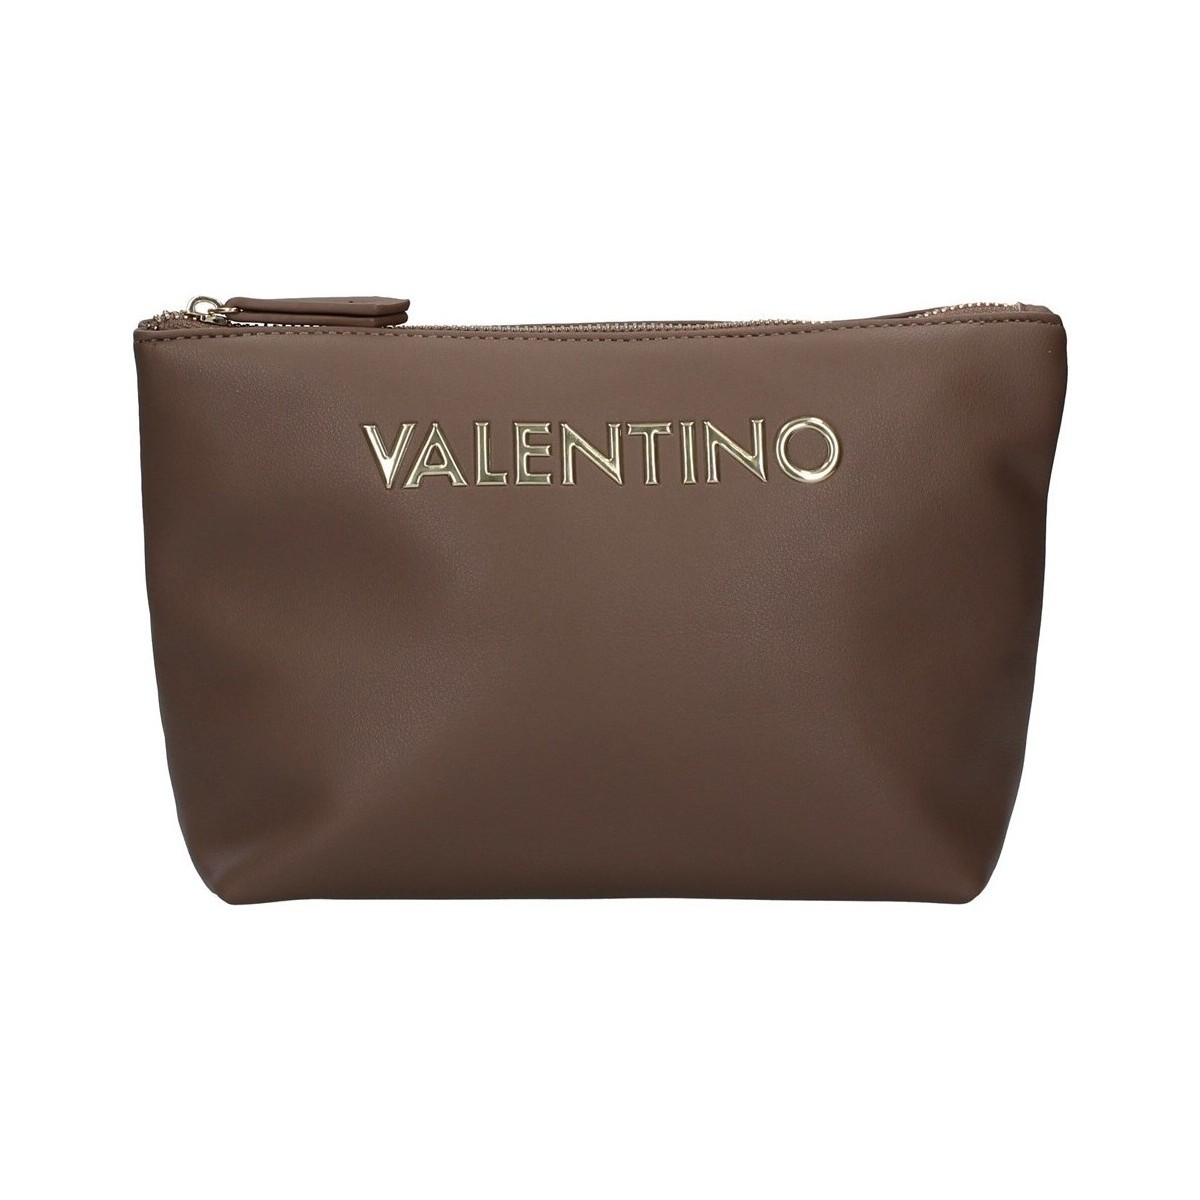 Taschen Damen Kosmetiktasche Valentino Bags VBE5JM513 Beige